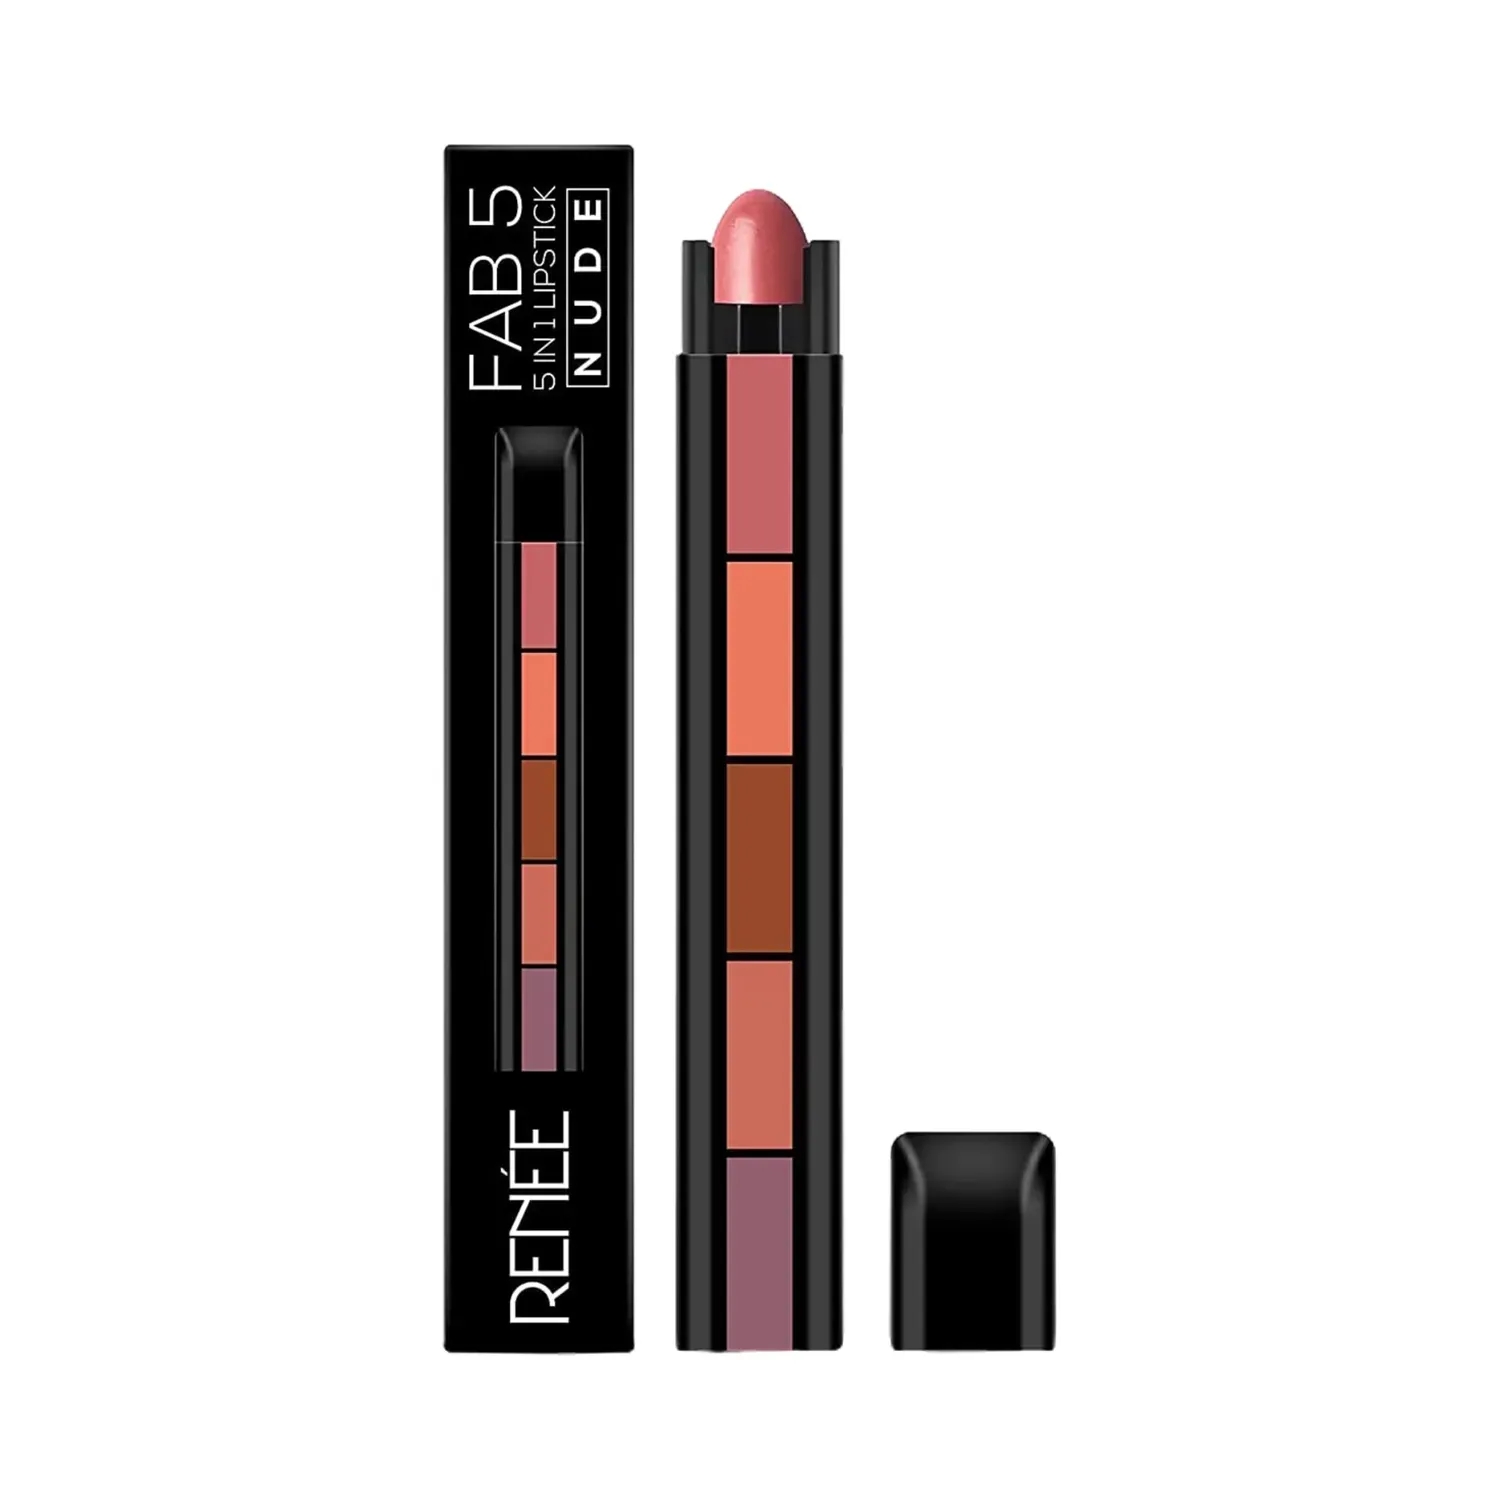 RENEE Fab 5 5 in 1 Nude Lipstick - (7.5 g)